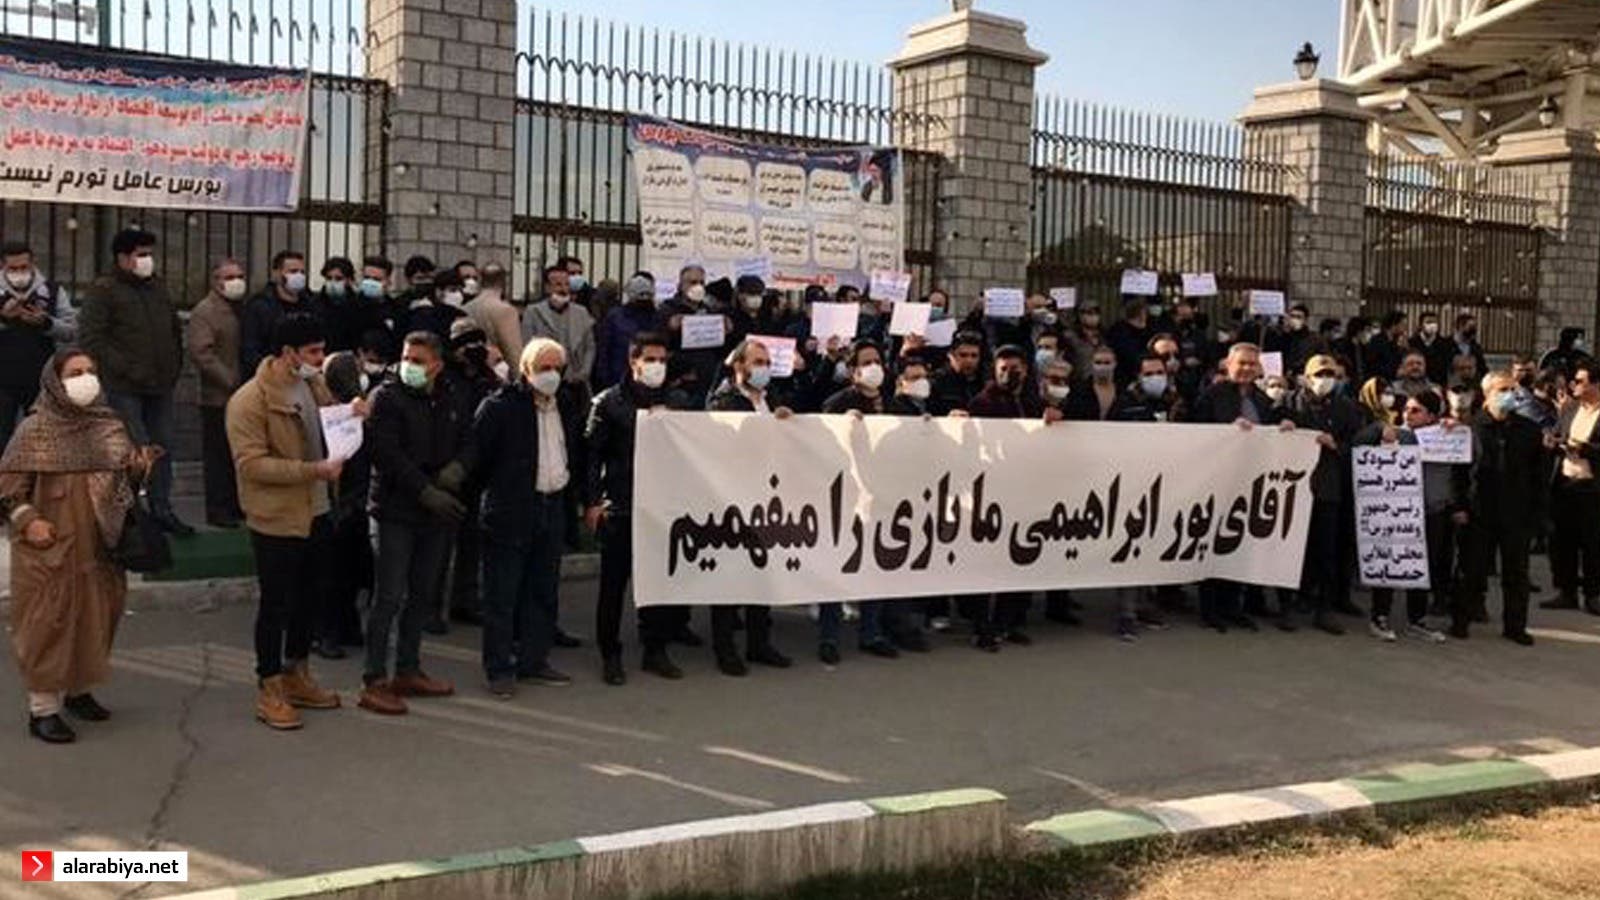 تظاهرات إيران